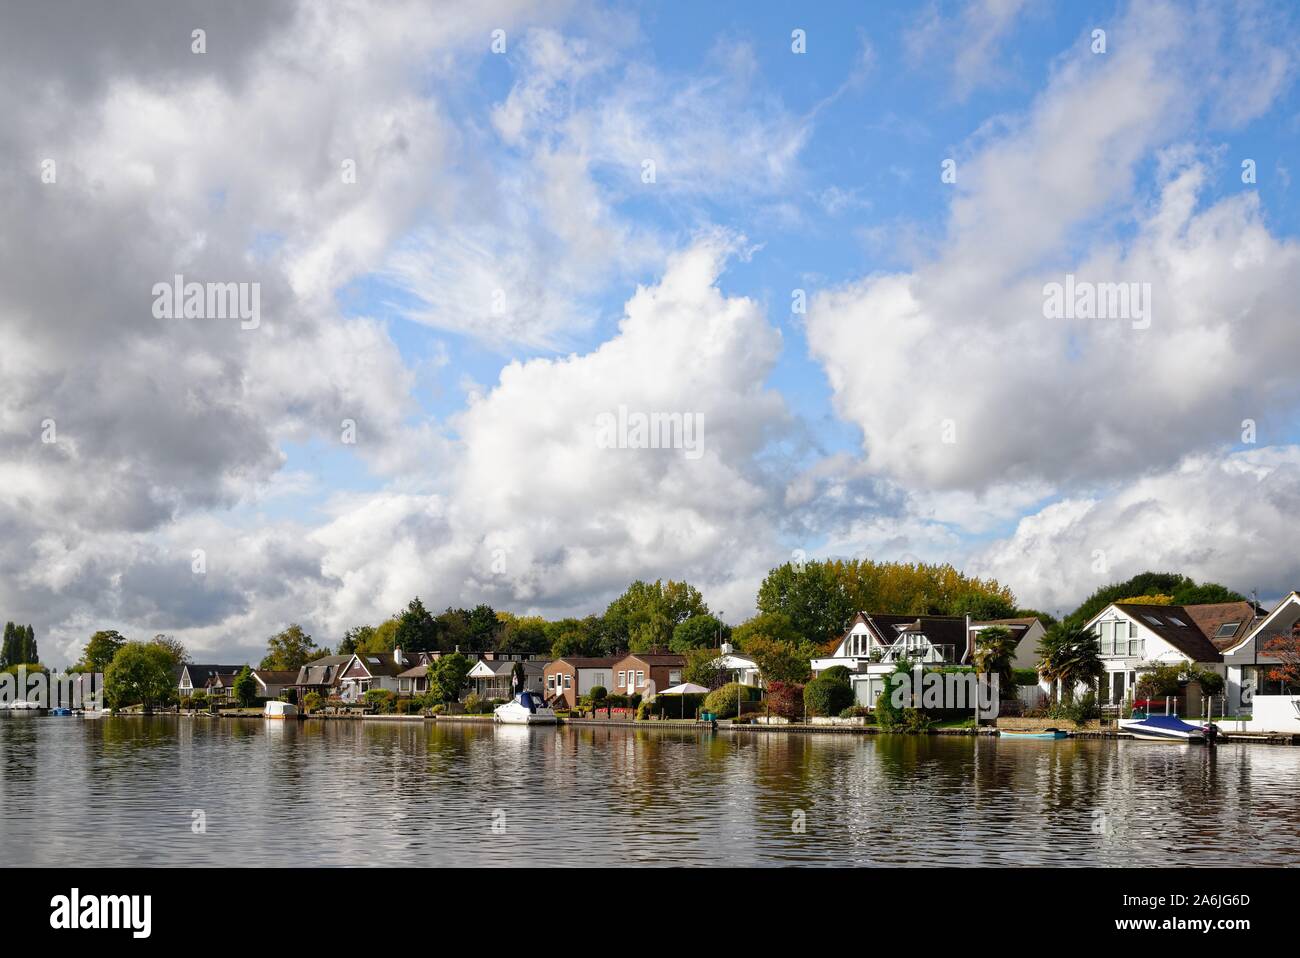 Waterside private Häuser am Flussufer in Sunbury on Thames gegen einen dramatischen Wolkenbildung, Surrey, England, Großbritannien Stockfoto